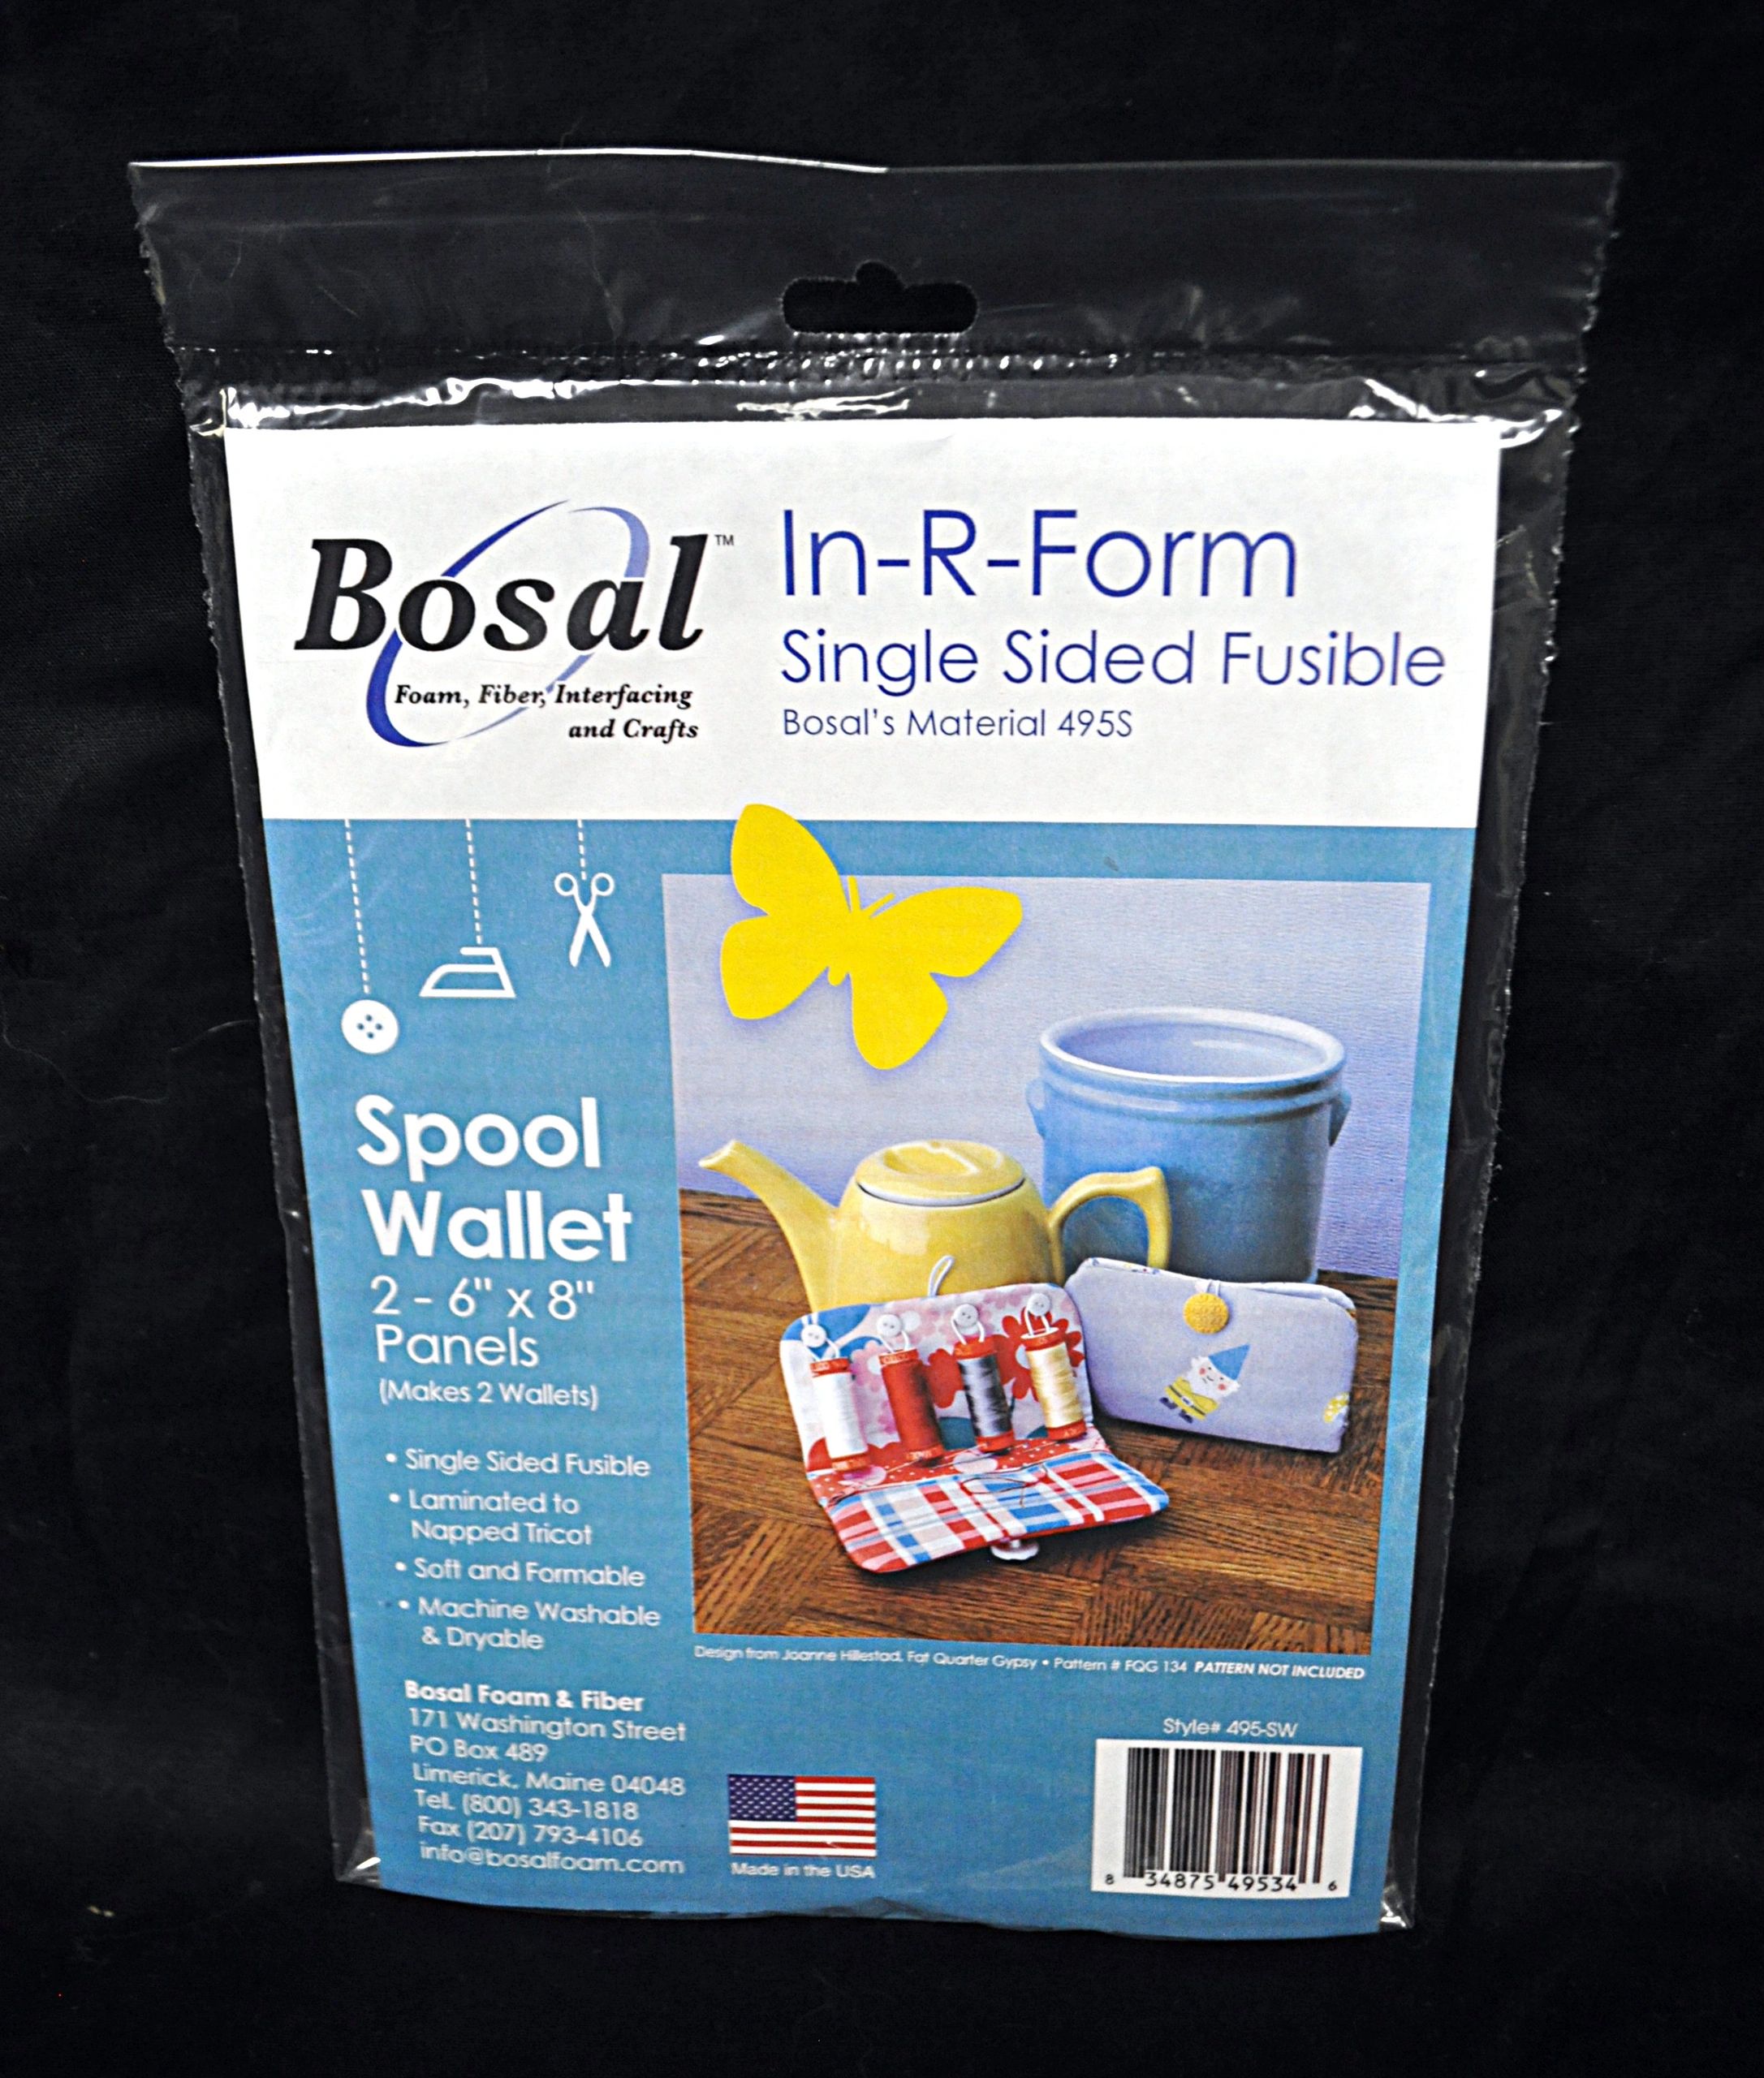 Bosal Batting Seam Tape – EvaPaige Quilt Designs